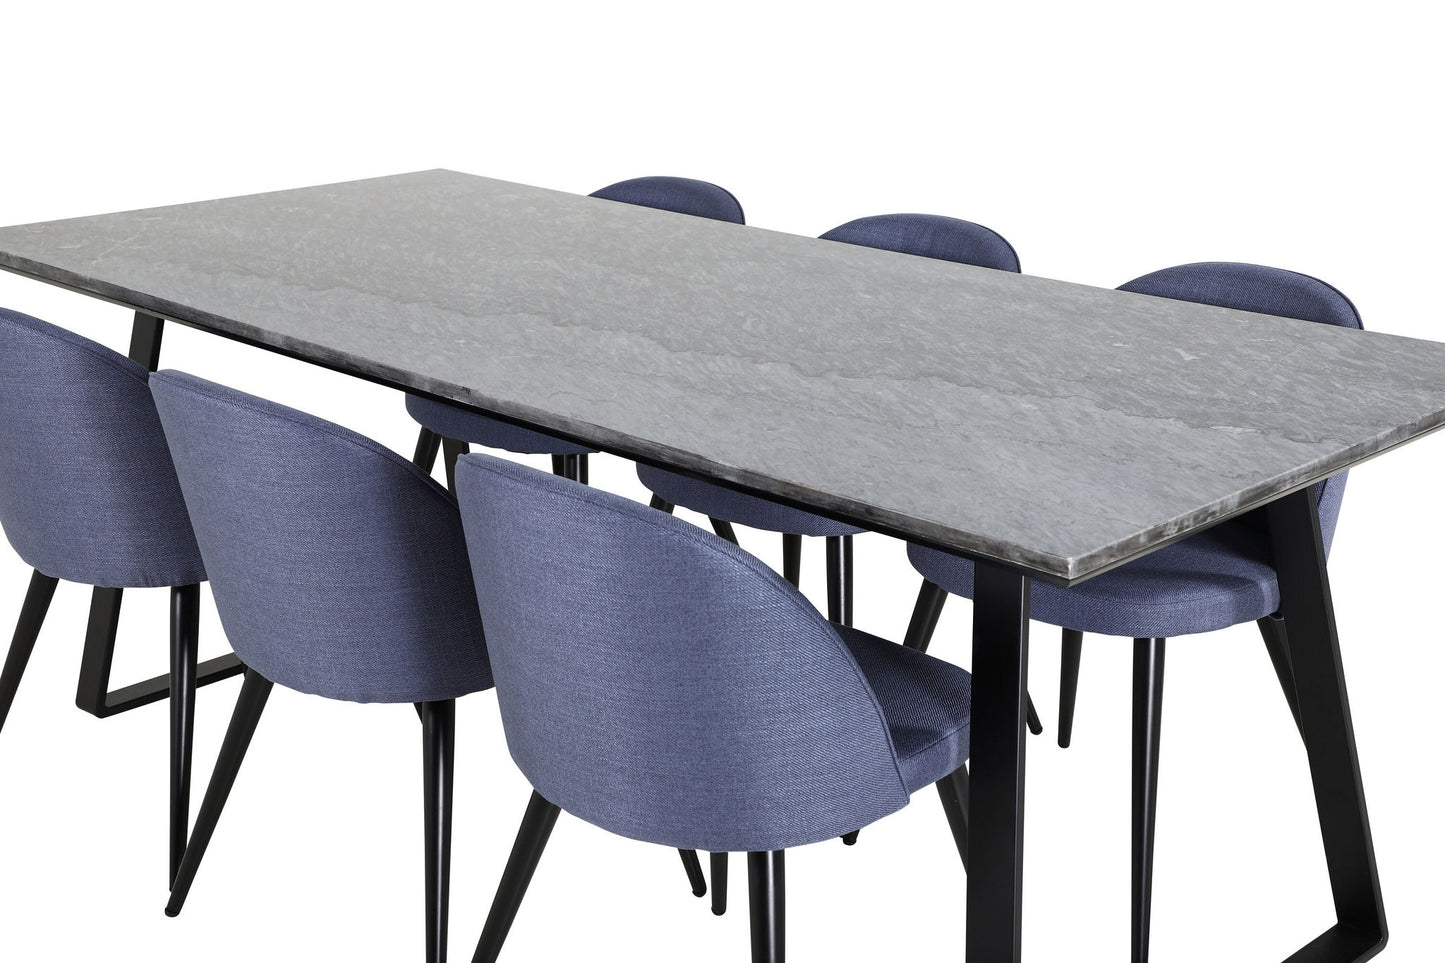 Estelle - Spisebord, 200*90*H76 - Sort+ velour Stol - Sorte ben - Blåt stof